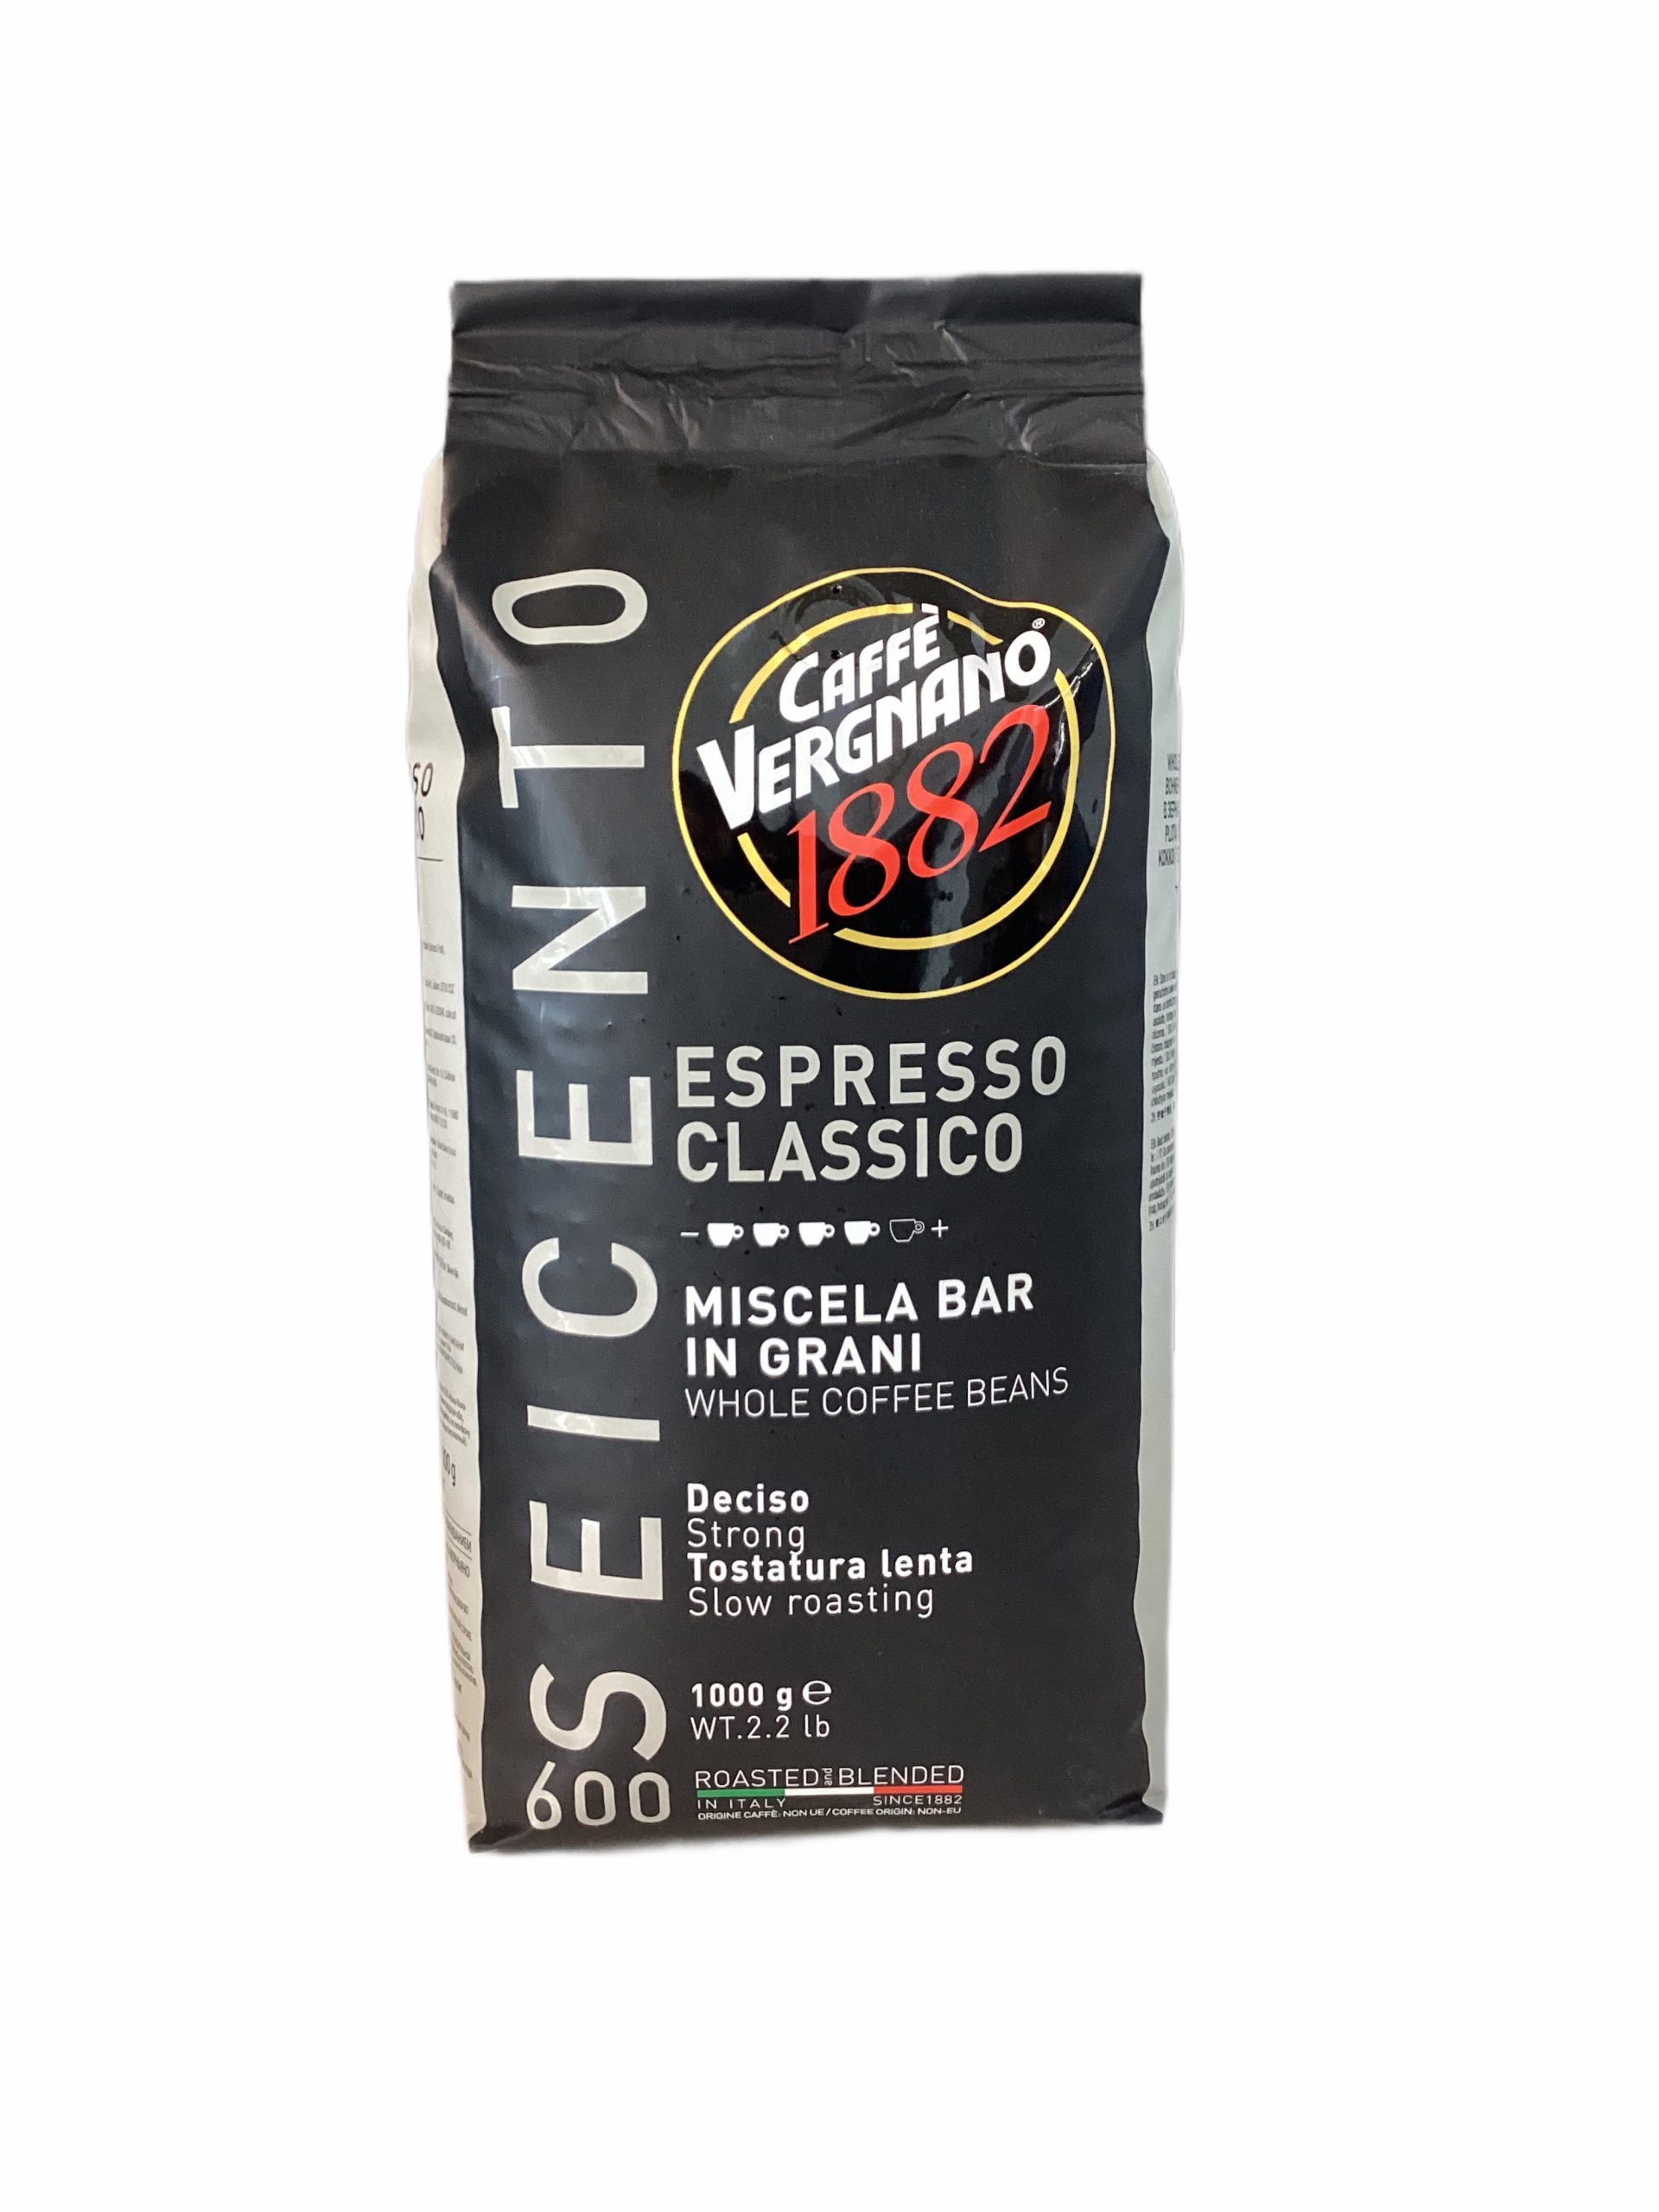 Seicento Espresso Classico